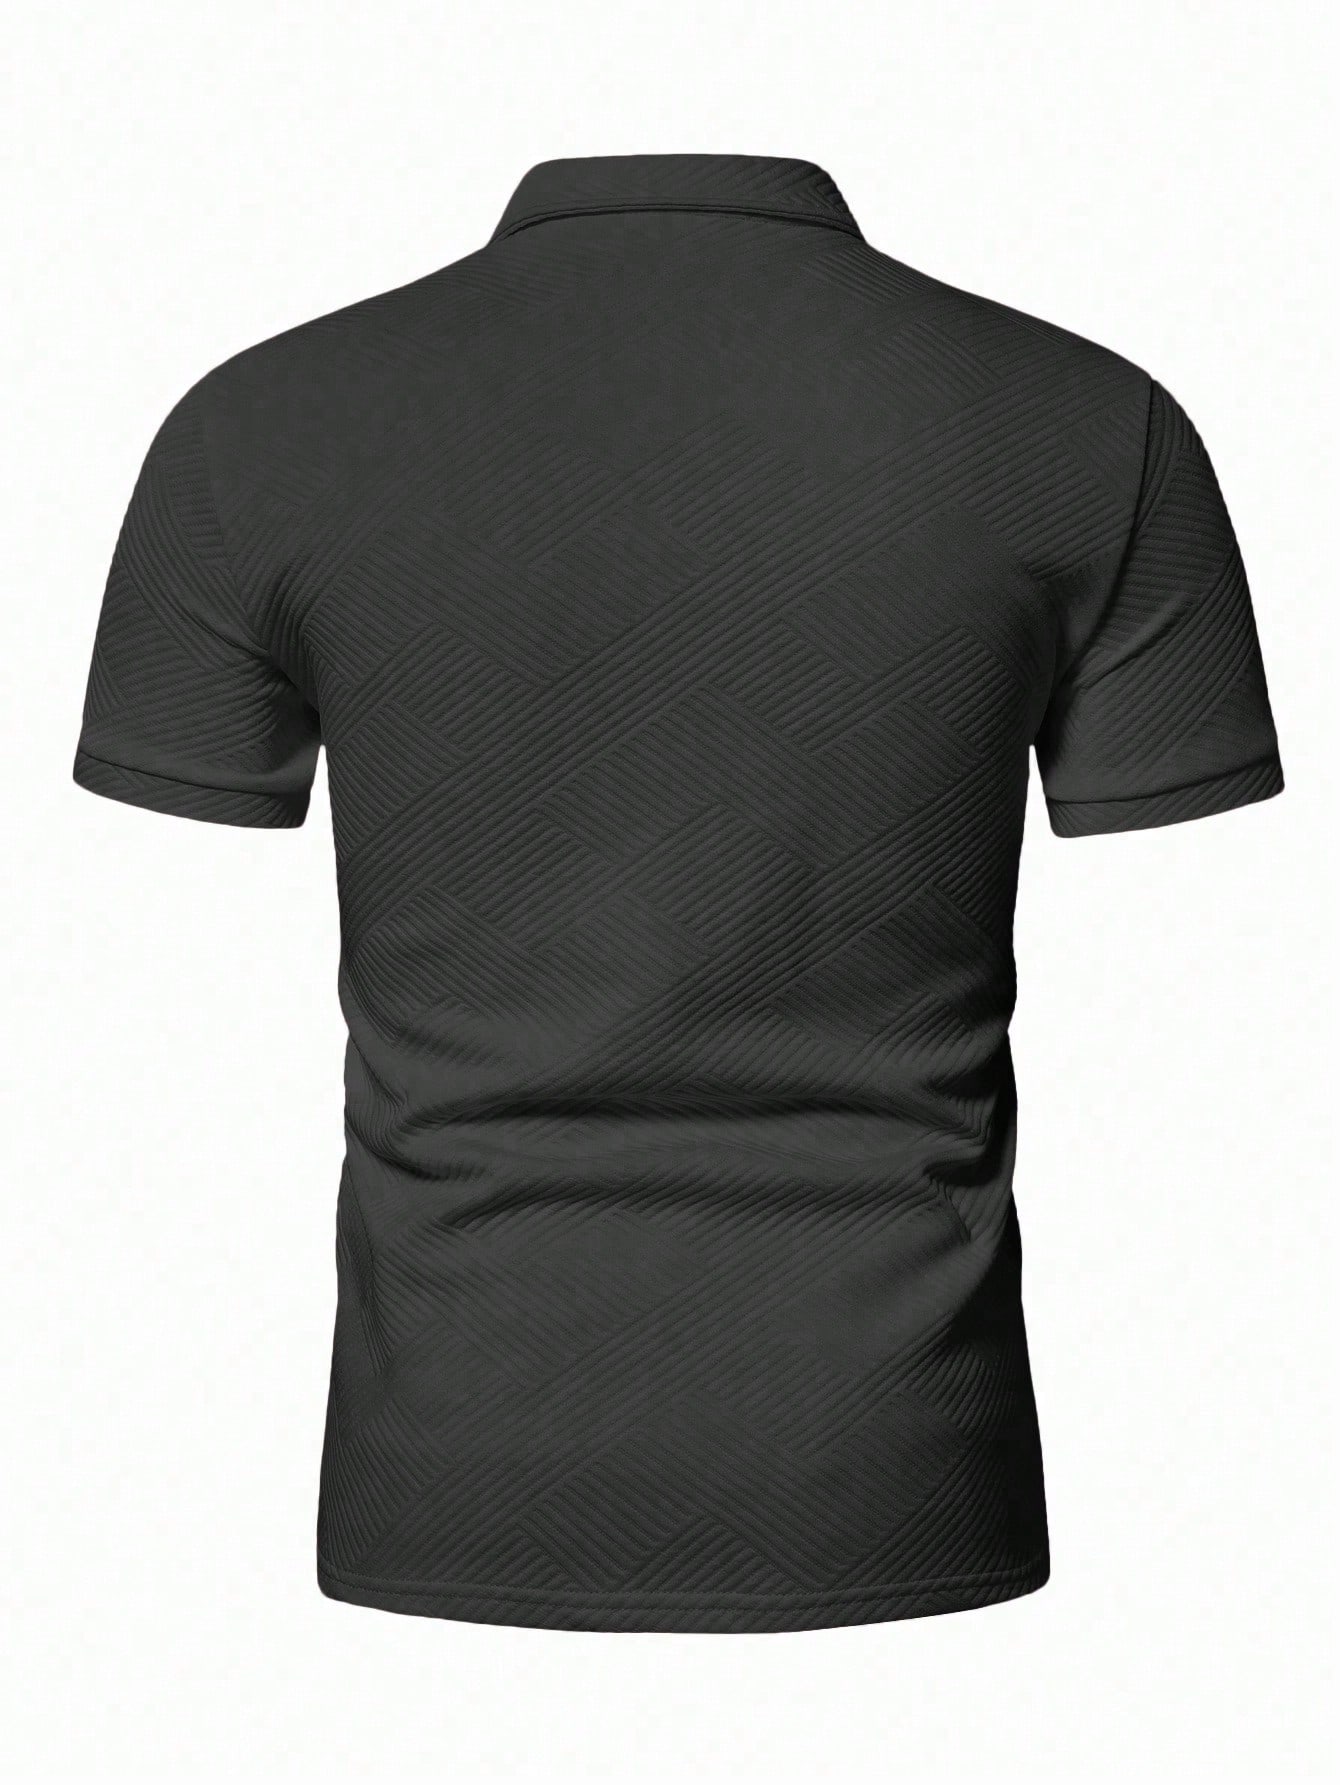 Мужская рубашка-поло с коротким рукавом Manfinity Homme с однотонной текстурой, темно-серый текстурированная однотонная мужская футболка поло cb drytec genre cutter